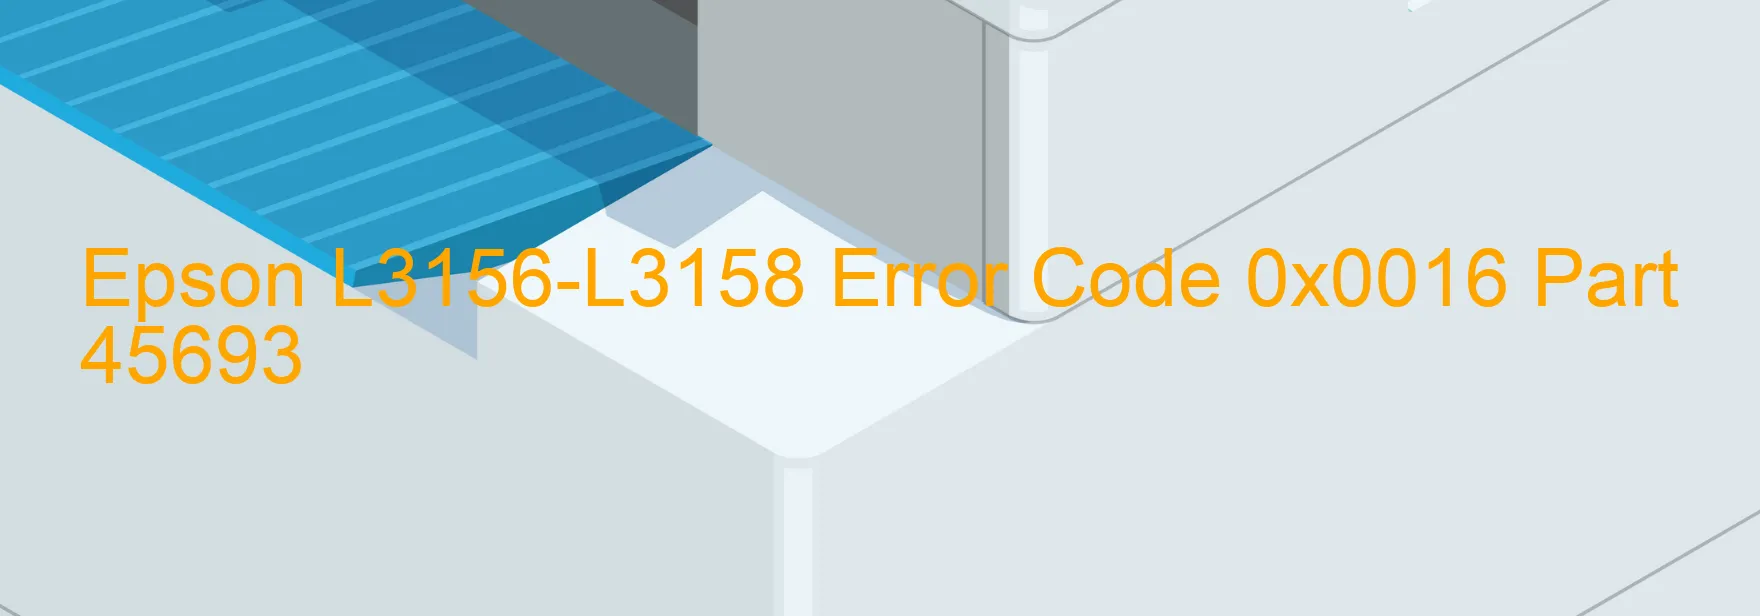 Epson L3156-L3158 Error 0x0016